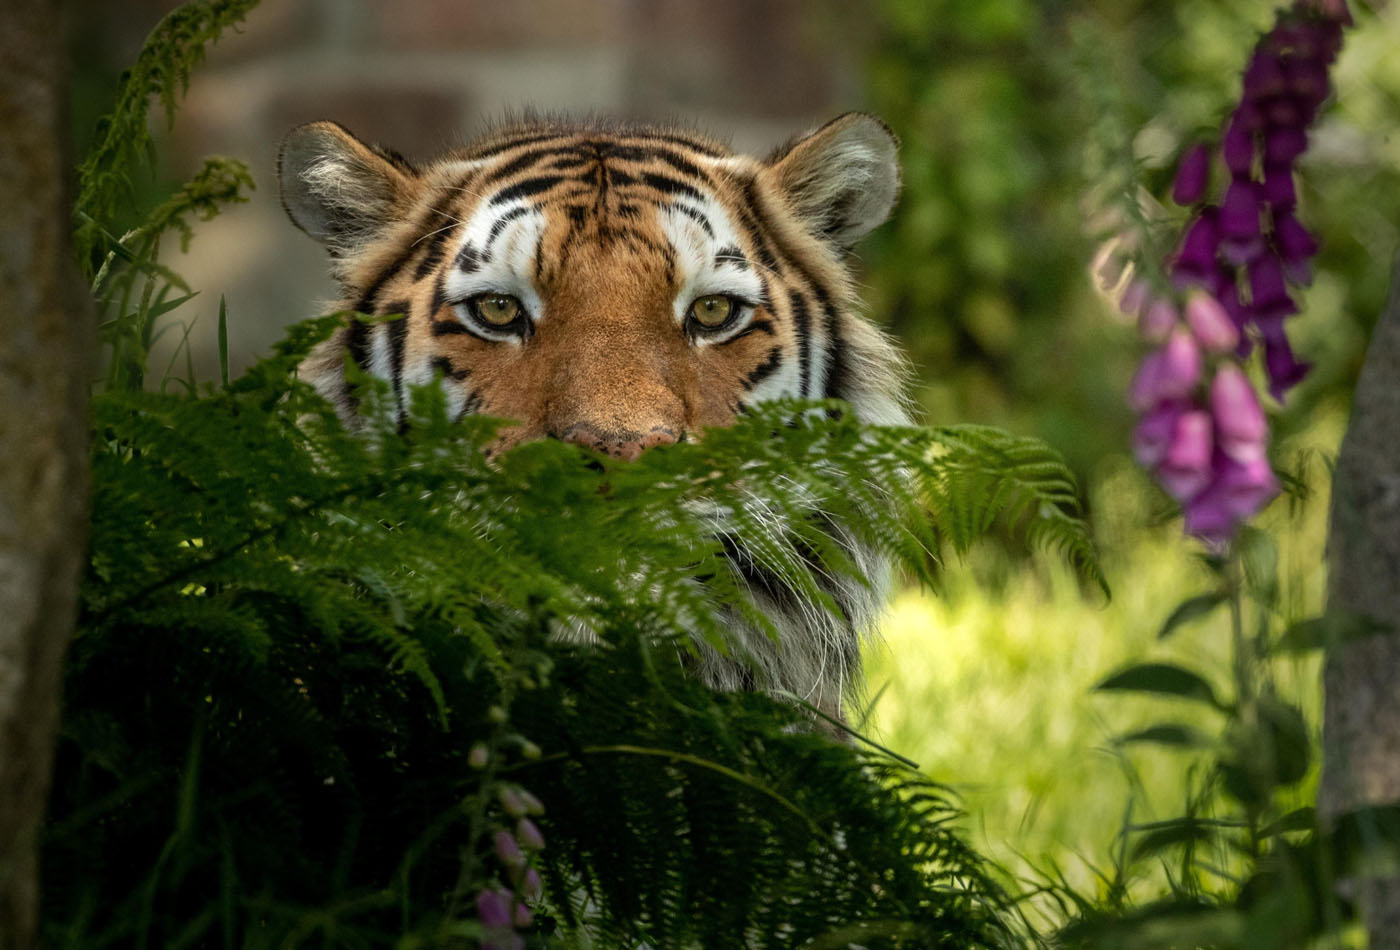 Dartmoor Zoo tiger